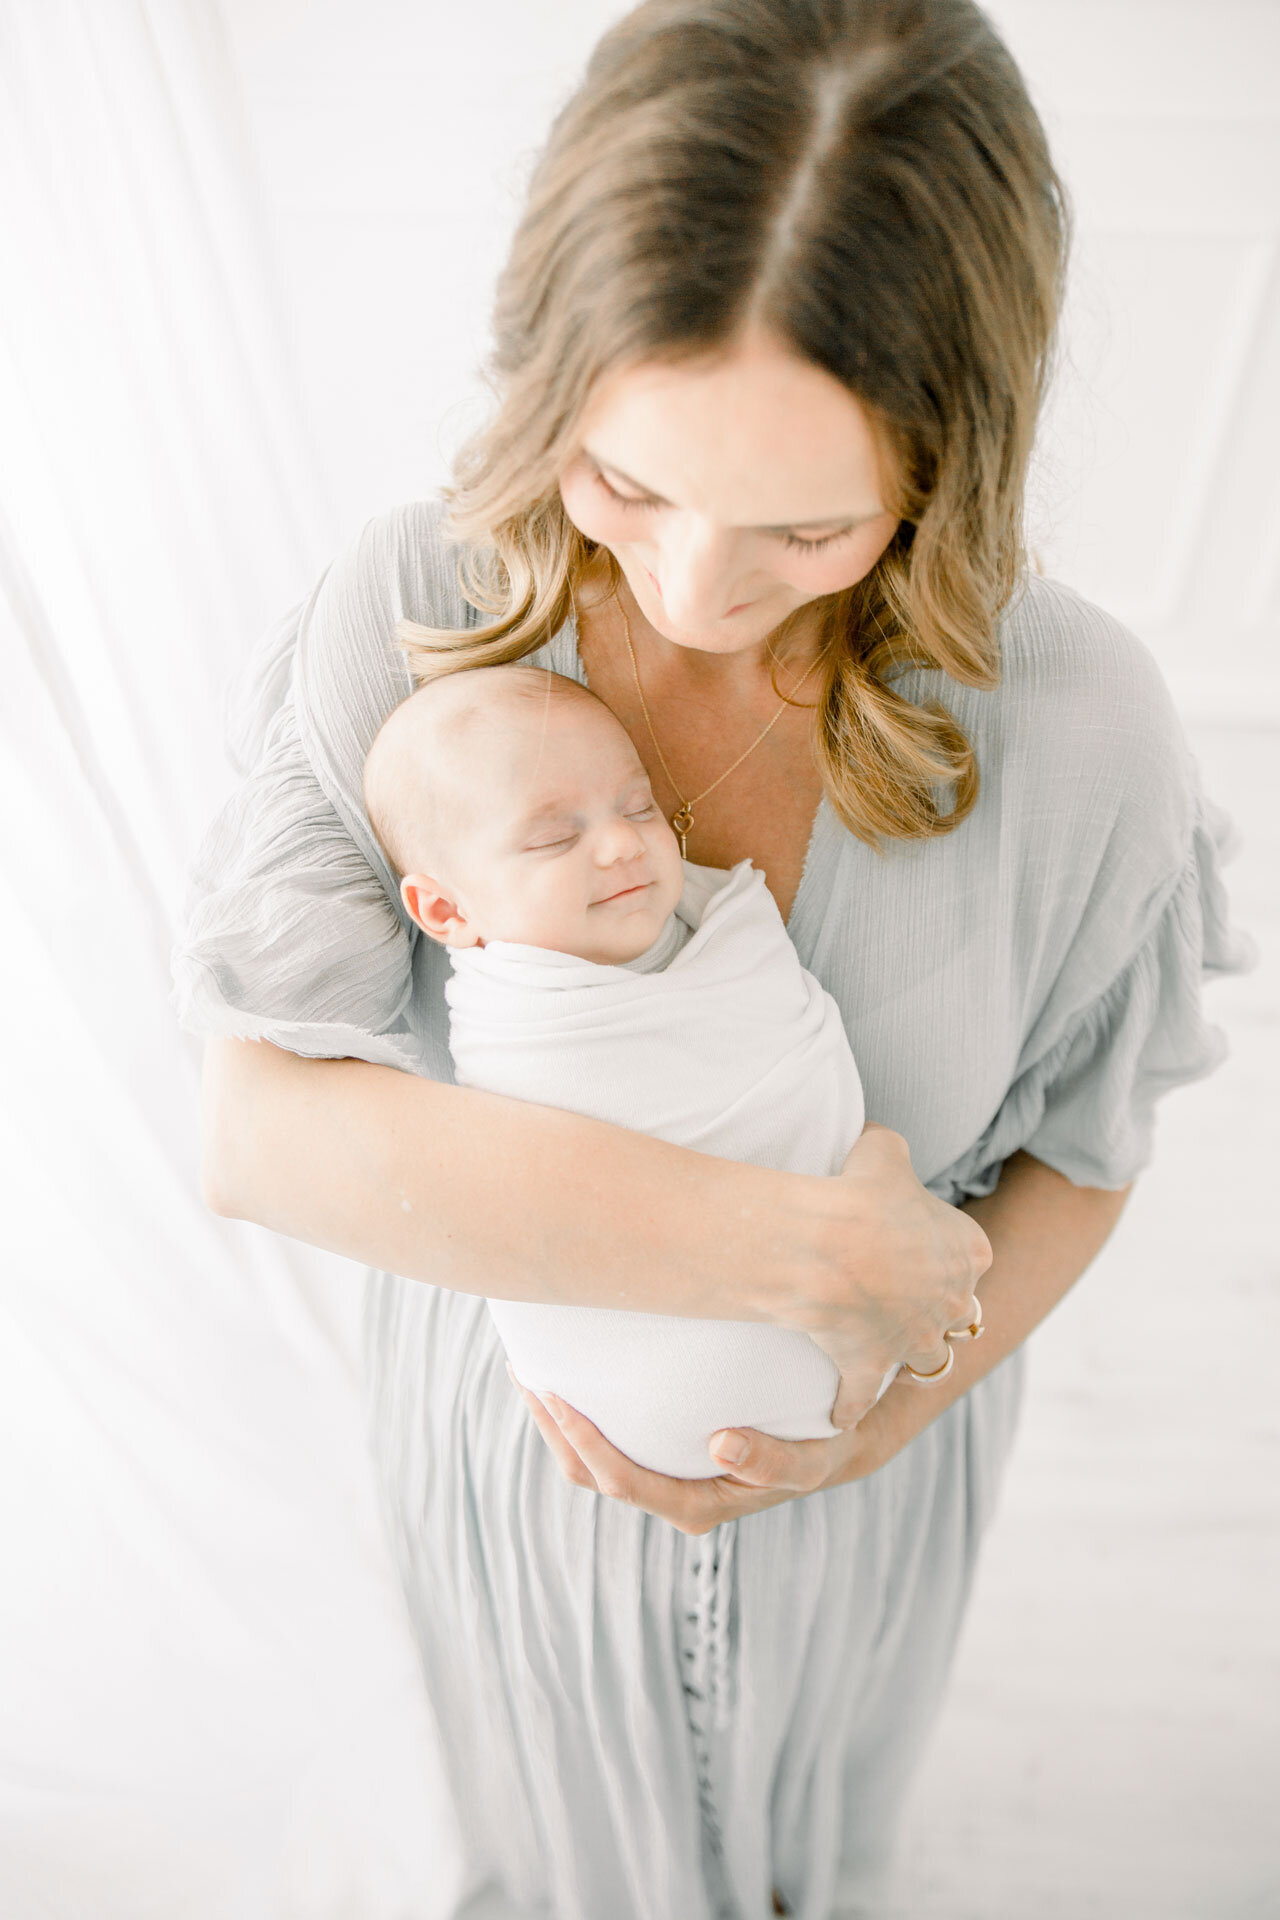 Neugeborenenshooting: Mama hält ihr Neugeborenes im Arm, das beim Schlafen lächelt.